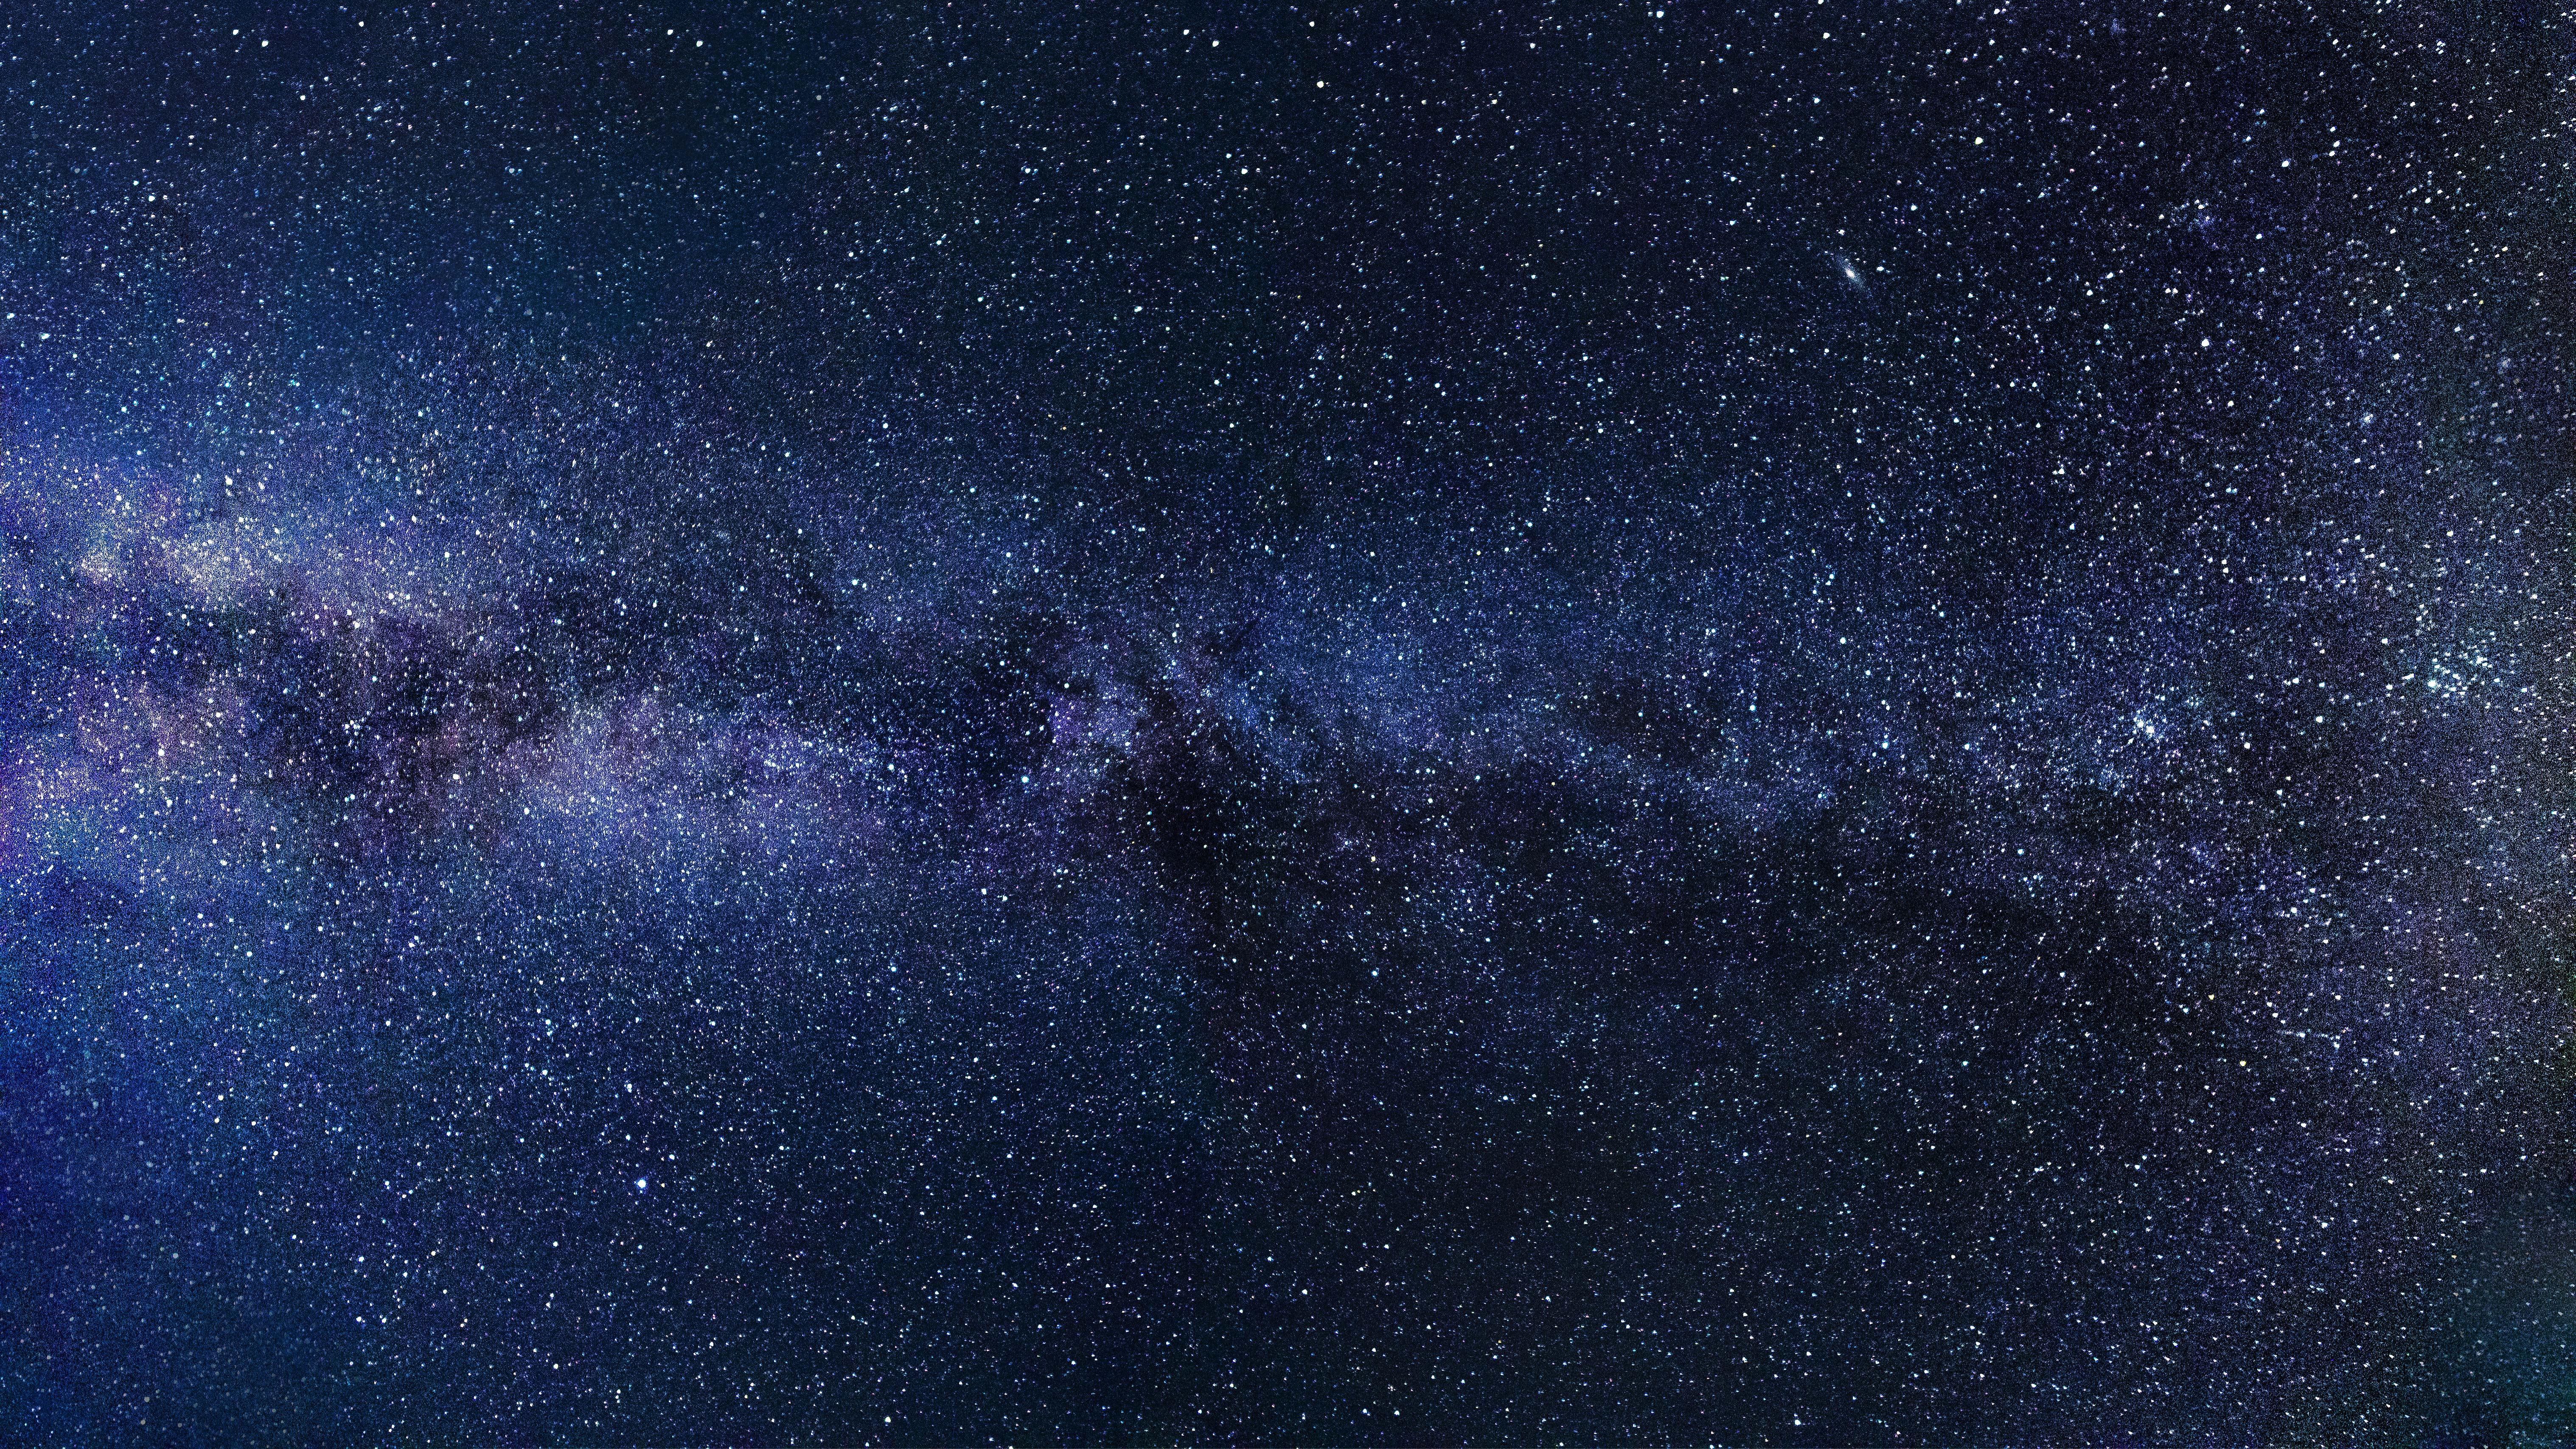 Milky Way Starry Sky Night 5k, HD Digital Universe, 4k Wallpaper